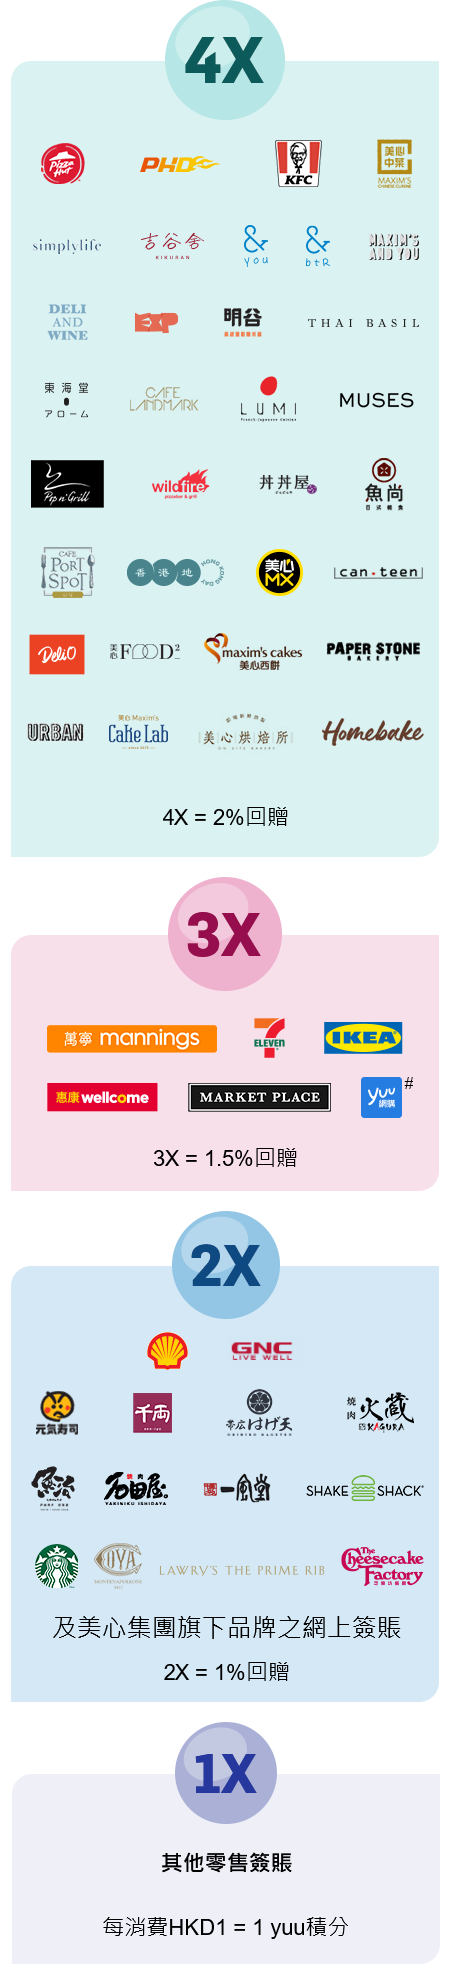 其他零售簽賬每消費 HKD1 = 1 yuu積分, 美心集團旗下其他品牌之食肆及分店 2X = 1%回贈, 3X = 1.5%回贈, 4X = 2%回贈